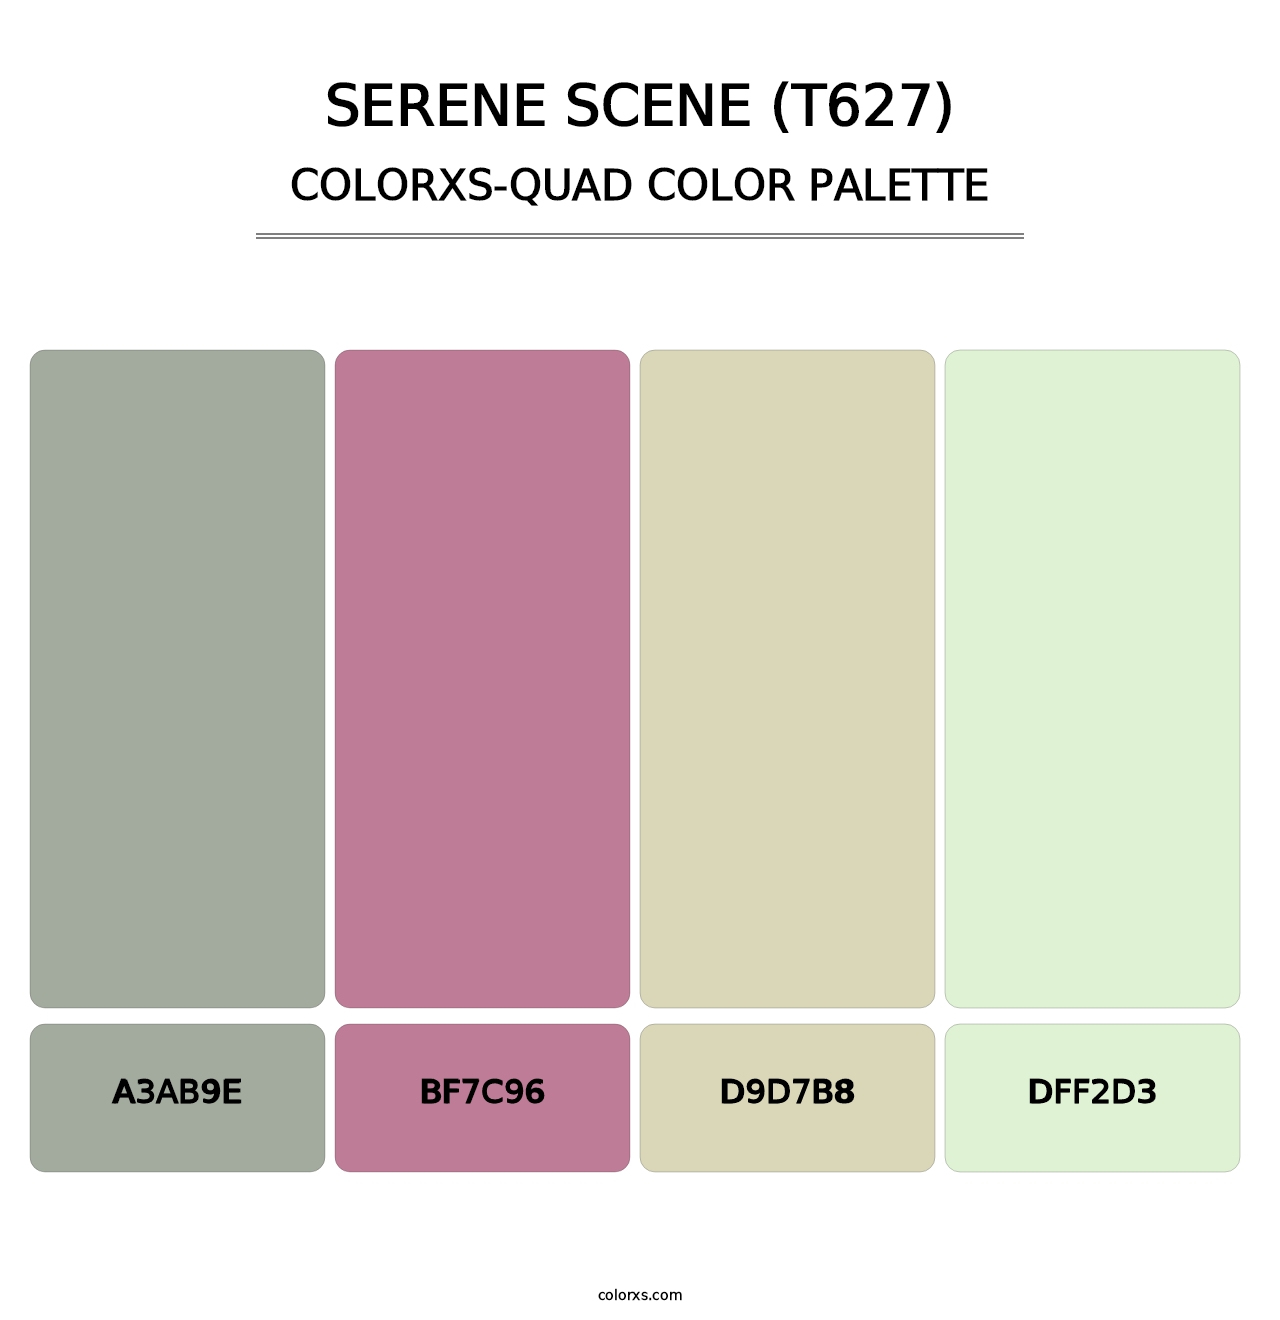 Serene Scene (T627) - Colorxs Quad Palette